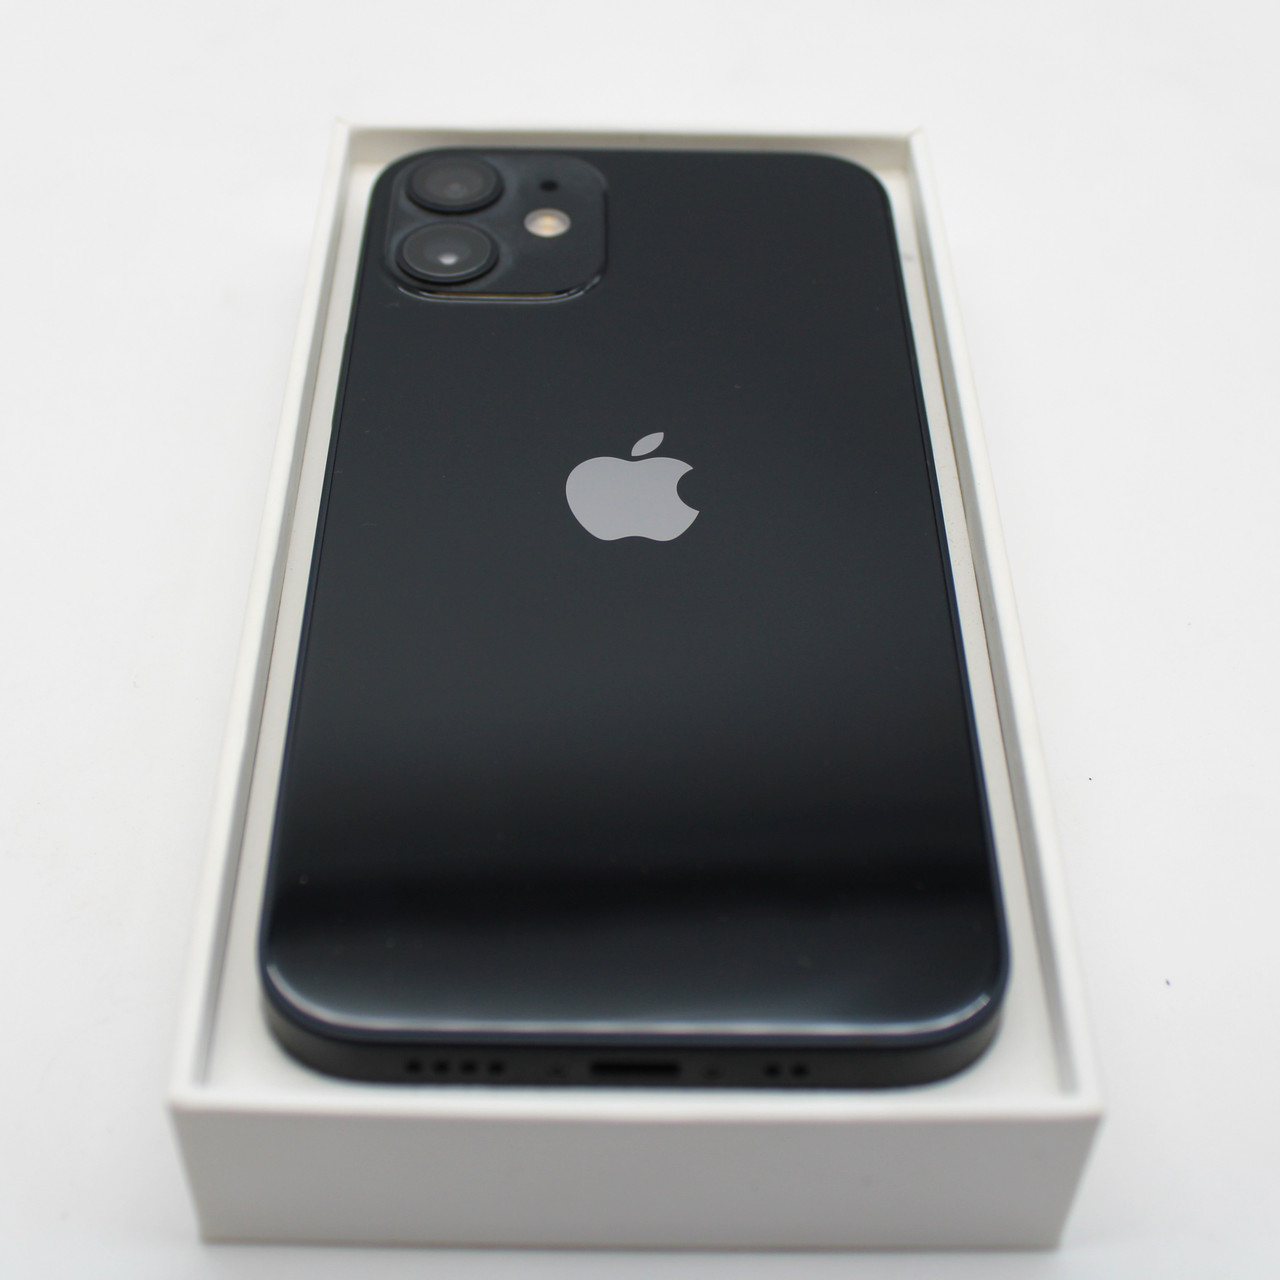 Apple iPhone 12 Mini - 64 GB, Unlocked, Black - NEW OPEN BOX - Read